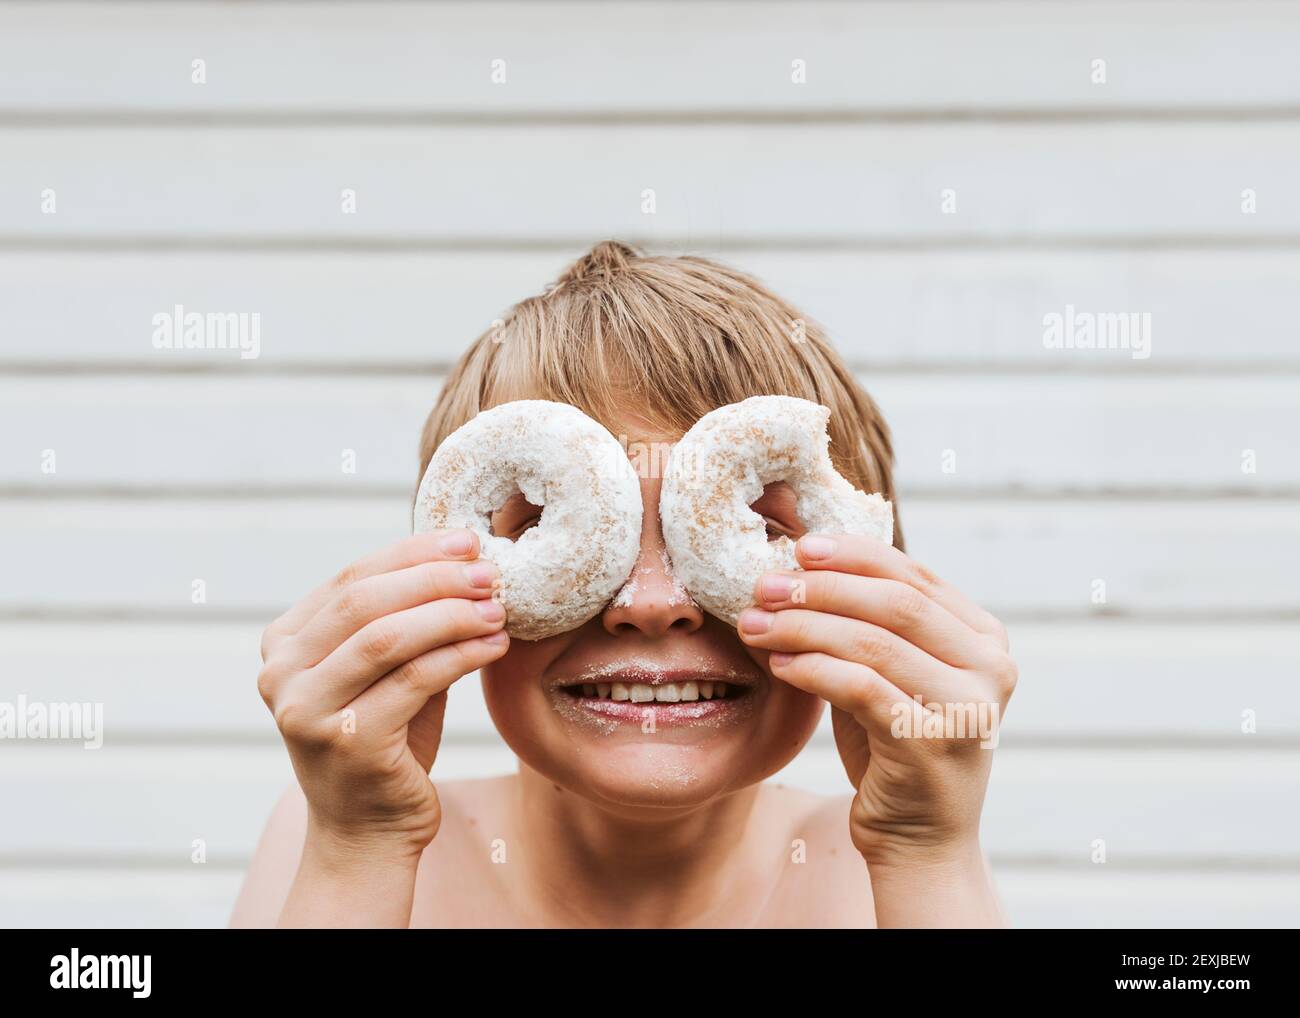 Mein Sohn hielt puderförmige Donuts an seine Augen wie eine Brille und sah durch die Löcher Stockfoto